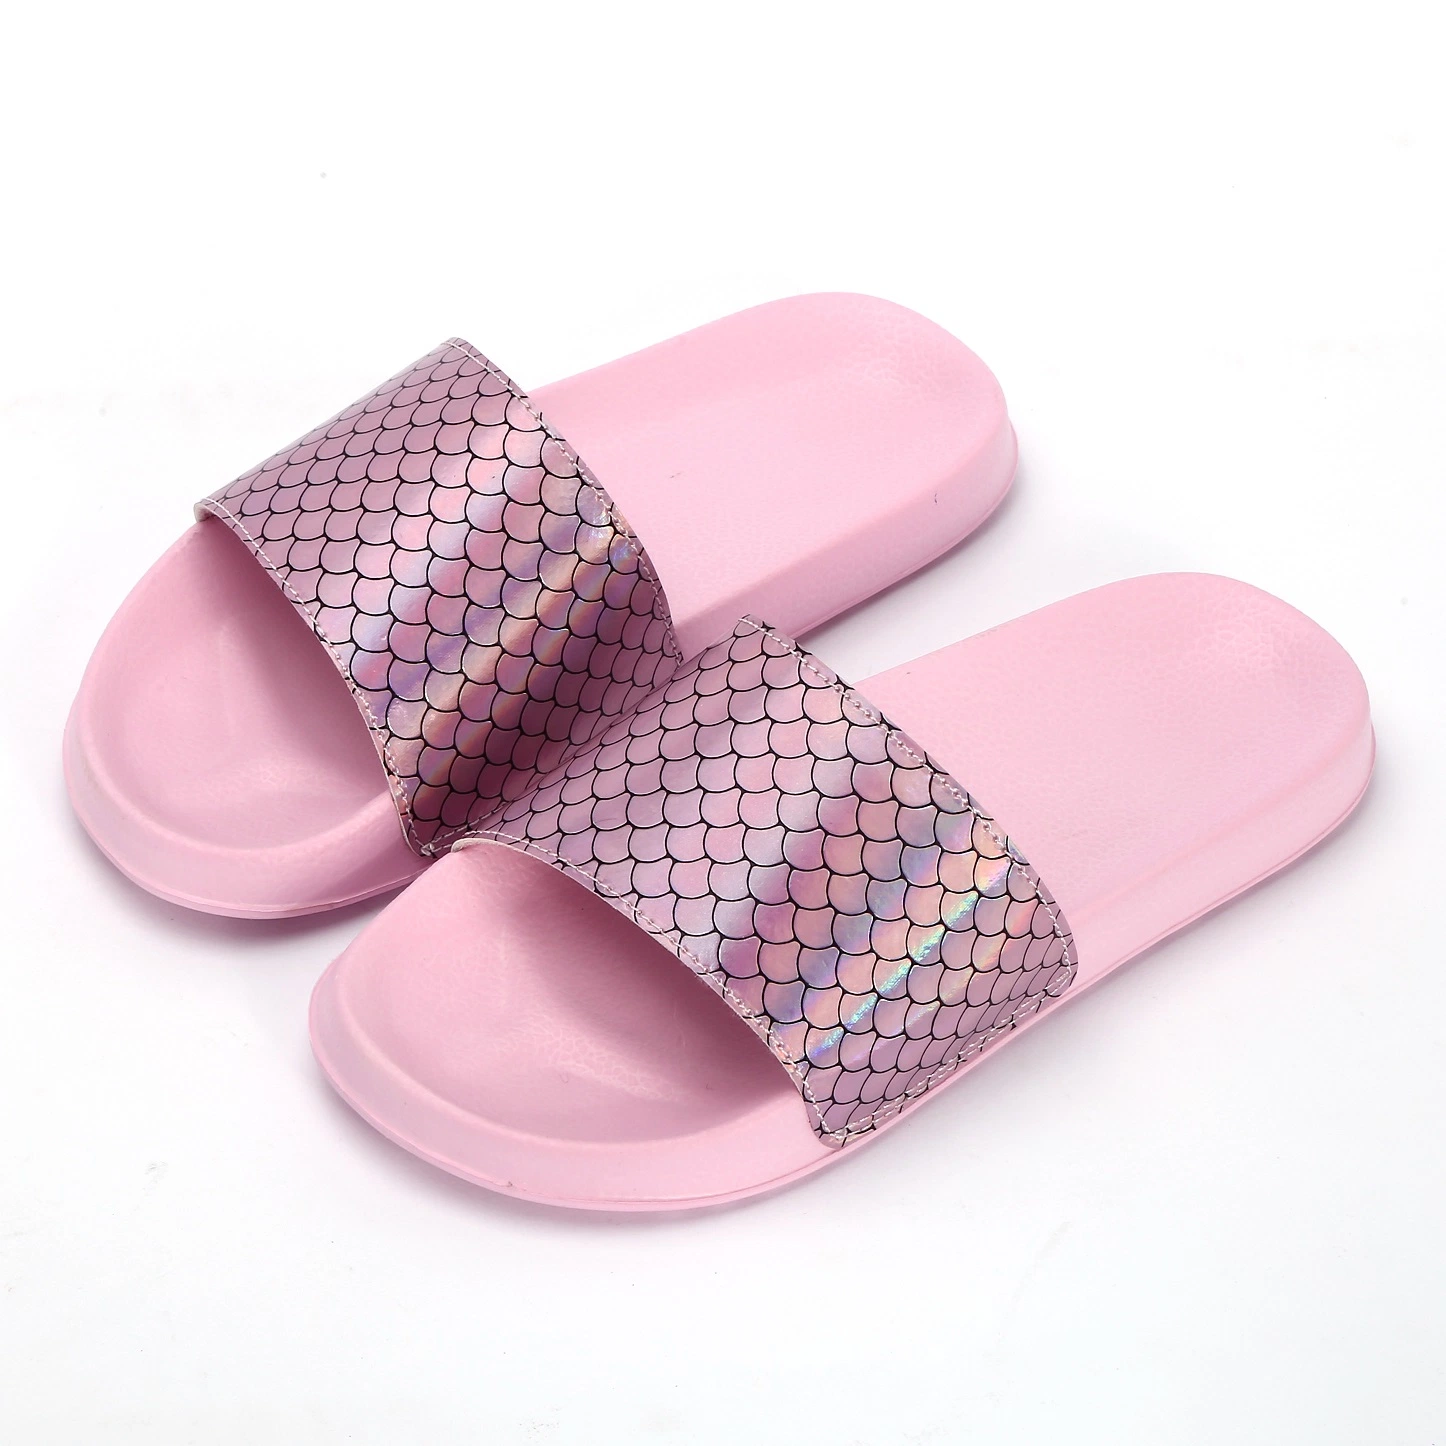 Children's Slippers Custom Girls Slippers Summer Fashion Lightweight Beach Slippers for Sale